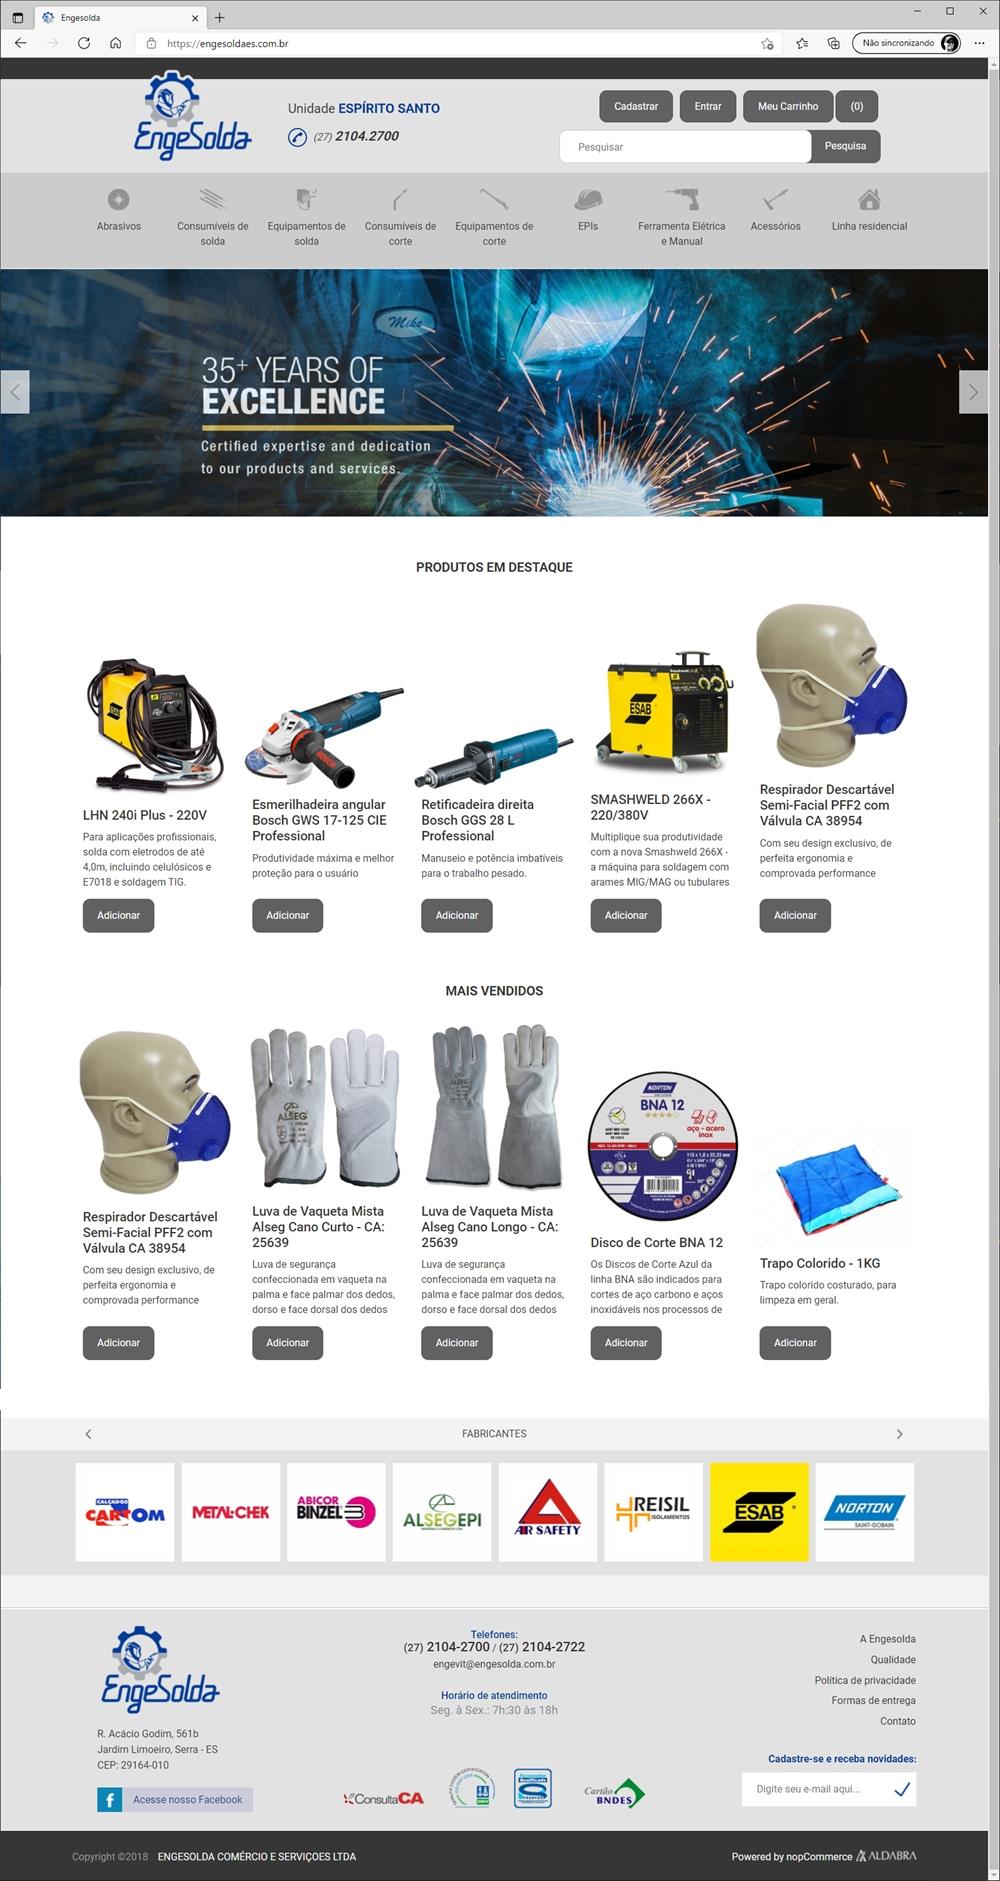 Projetos de Criar e-commerce: Design da página inicial do site da Engesolda